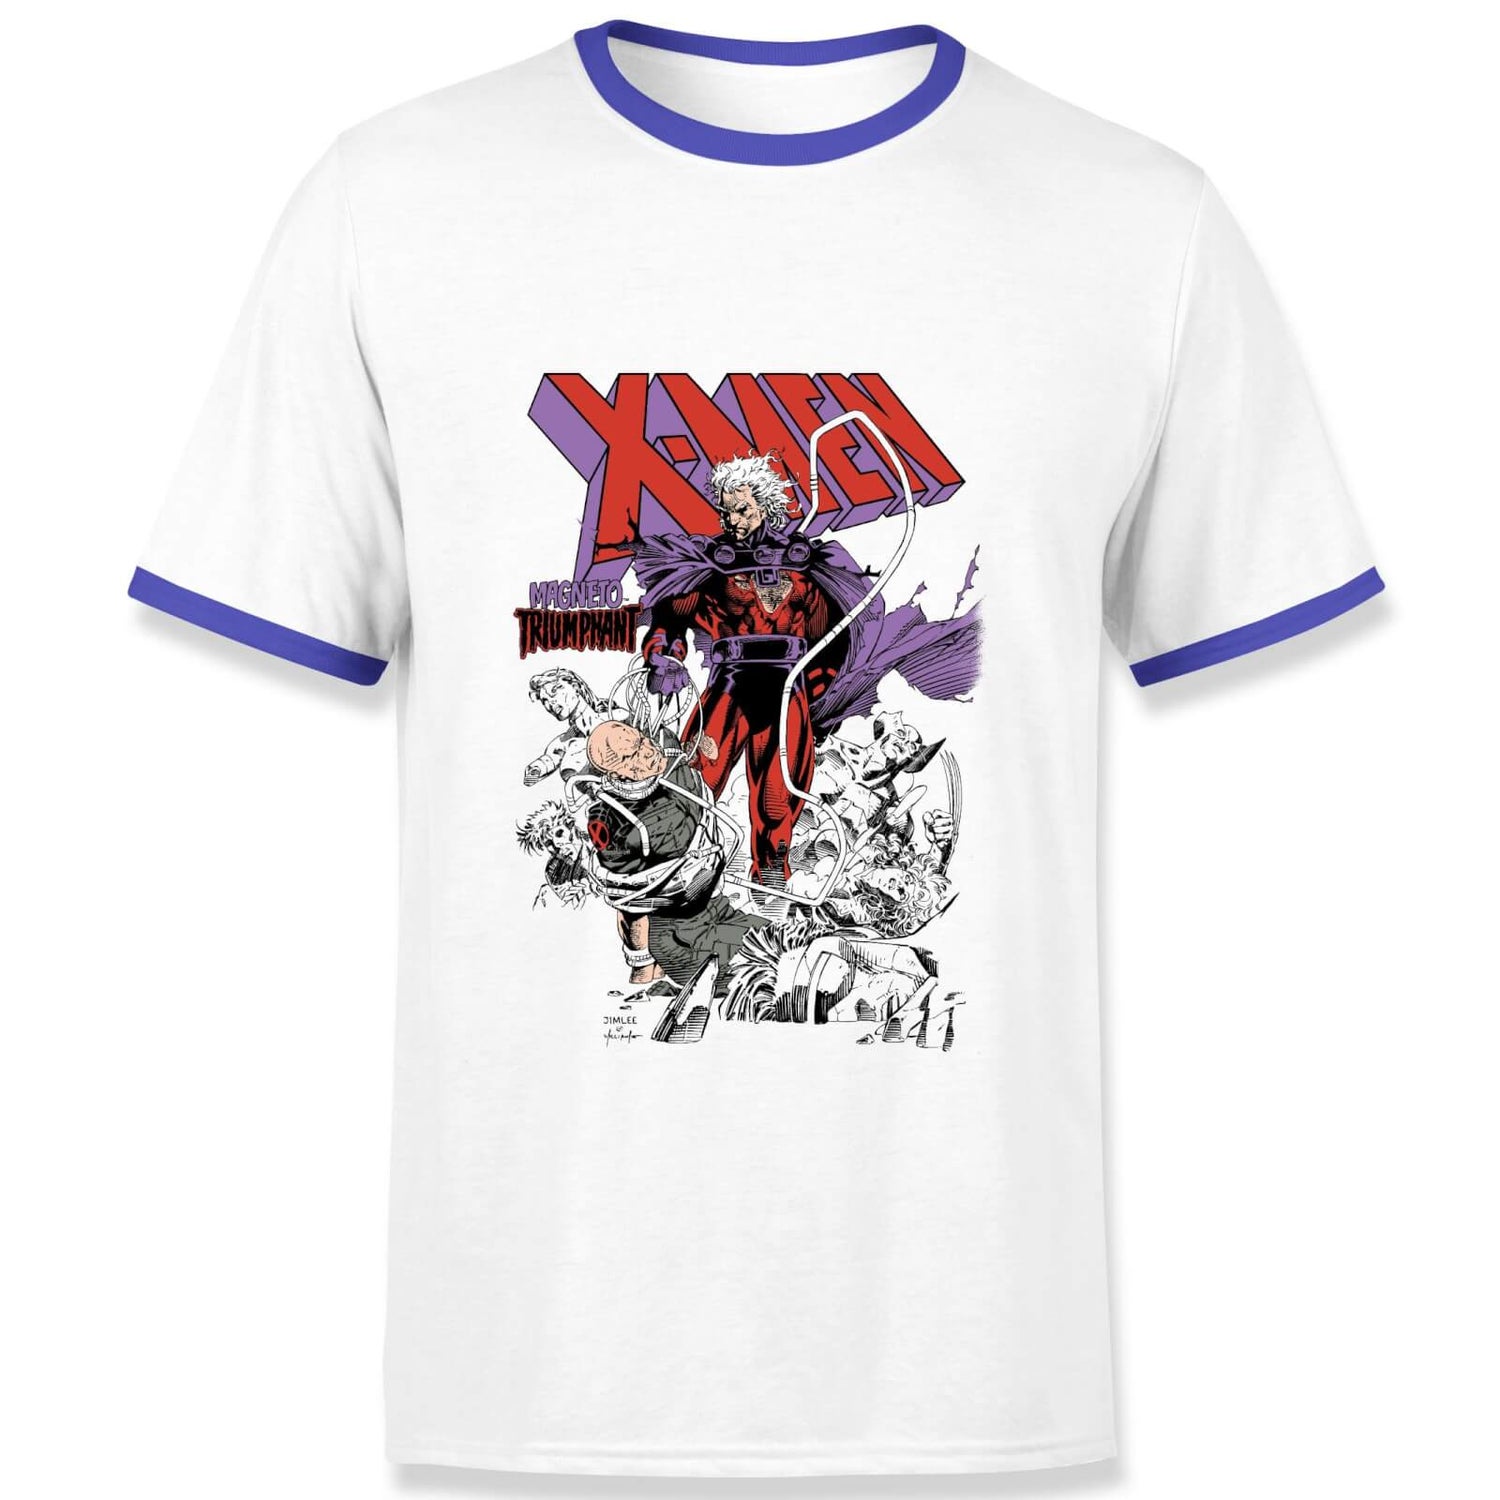 X-Men Magneto Triumphant Men's Ringer T-Shirt - White/Navy